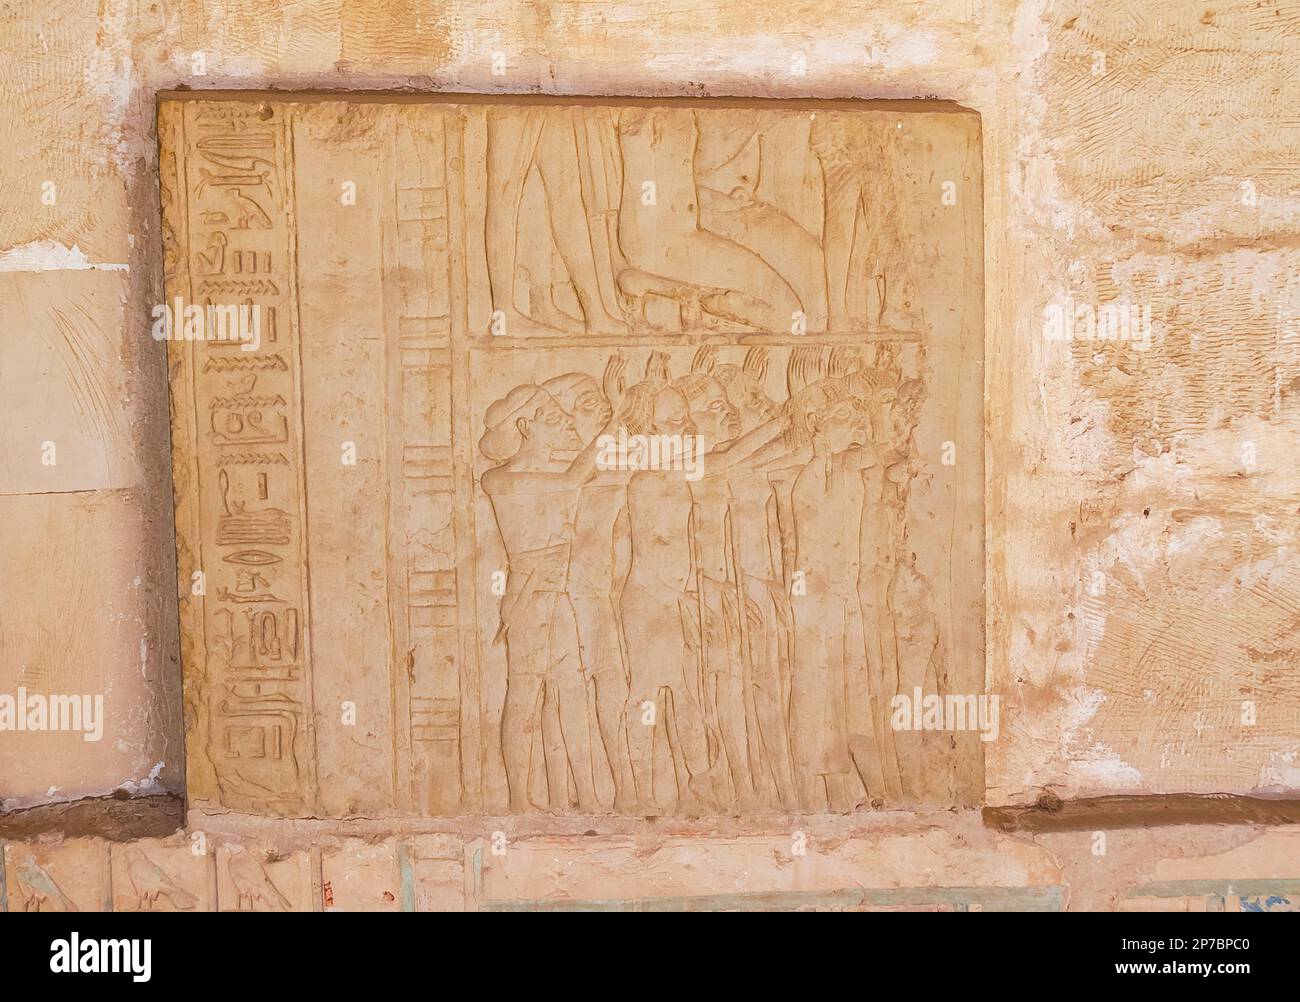 Égypte, Saqqara, tombe de Horemheb, mur ouest de la cour intérieure, ambassadeurs. Banque D'Images